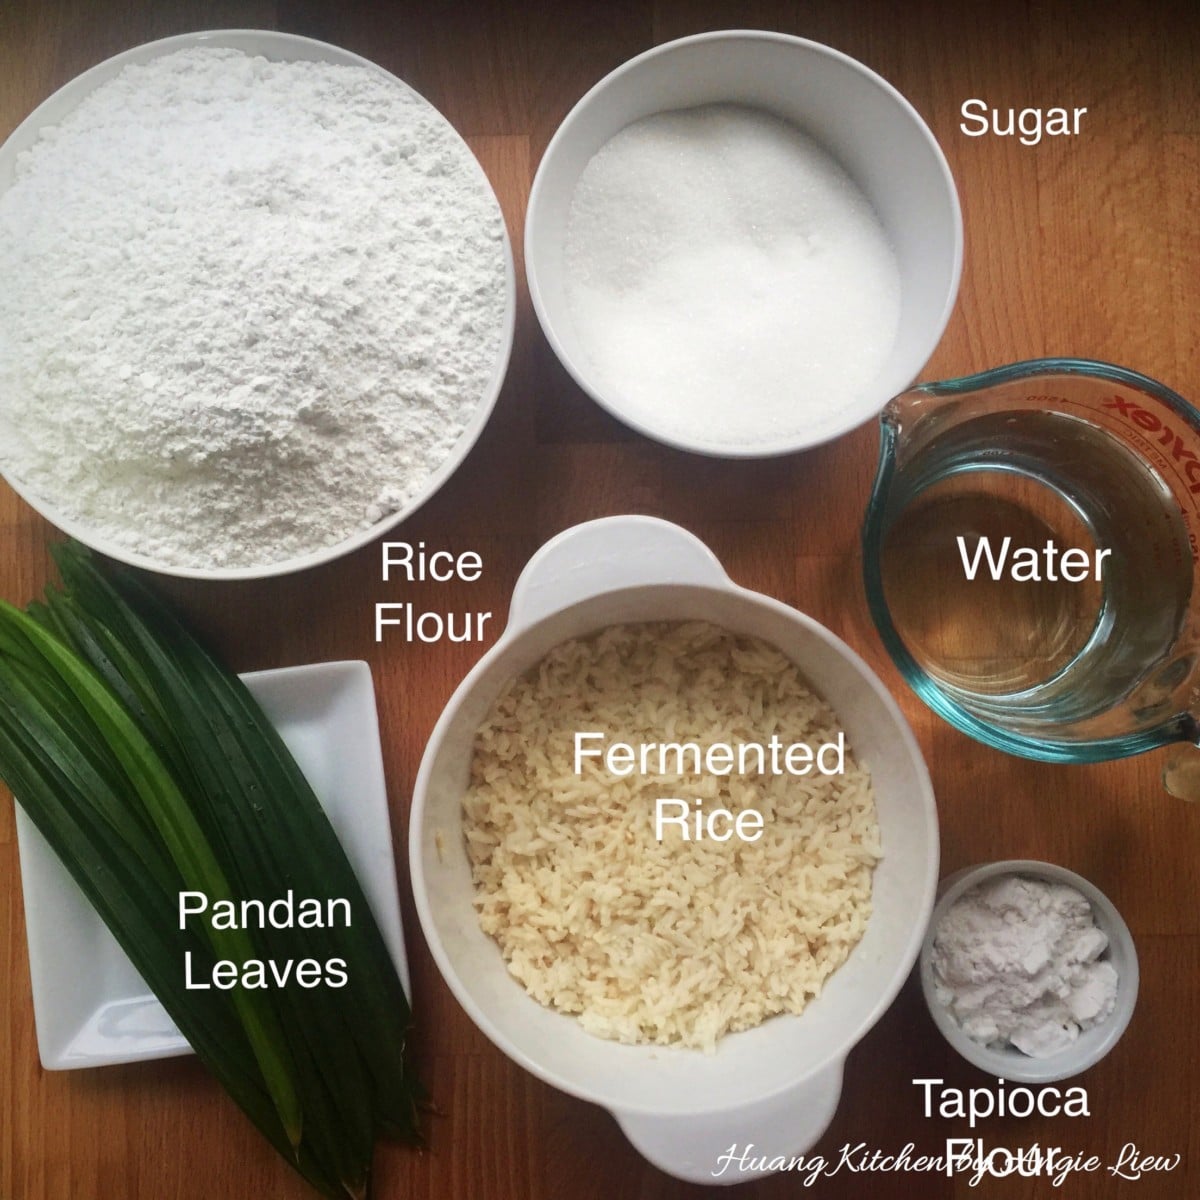 Ingredients to make huat kueh batter.